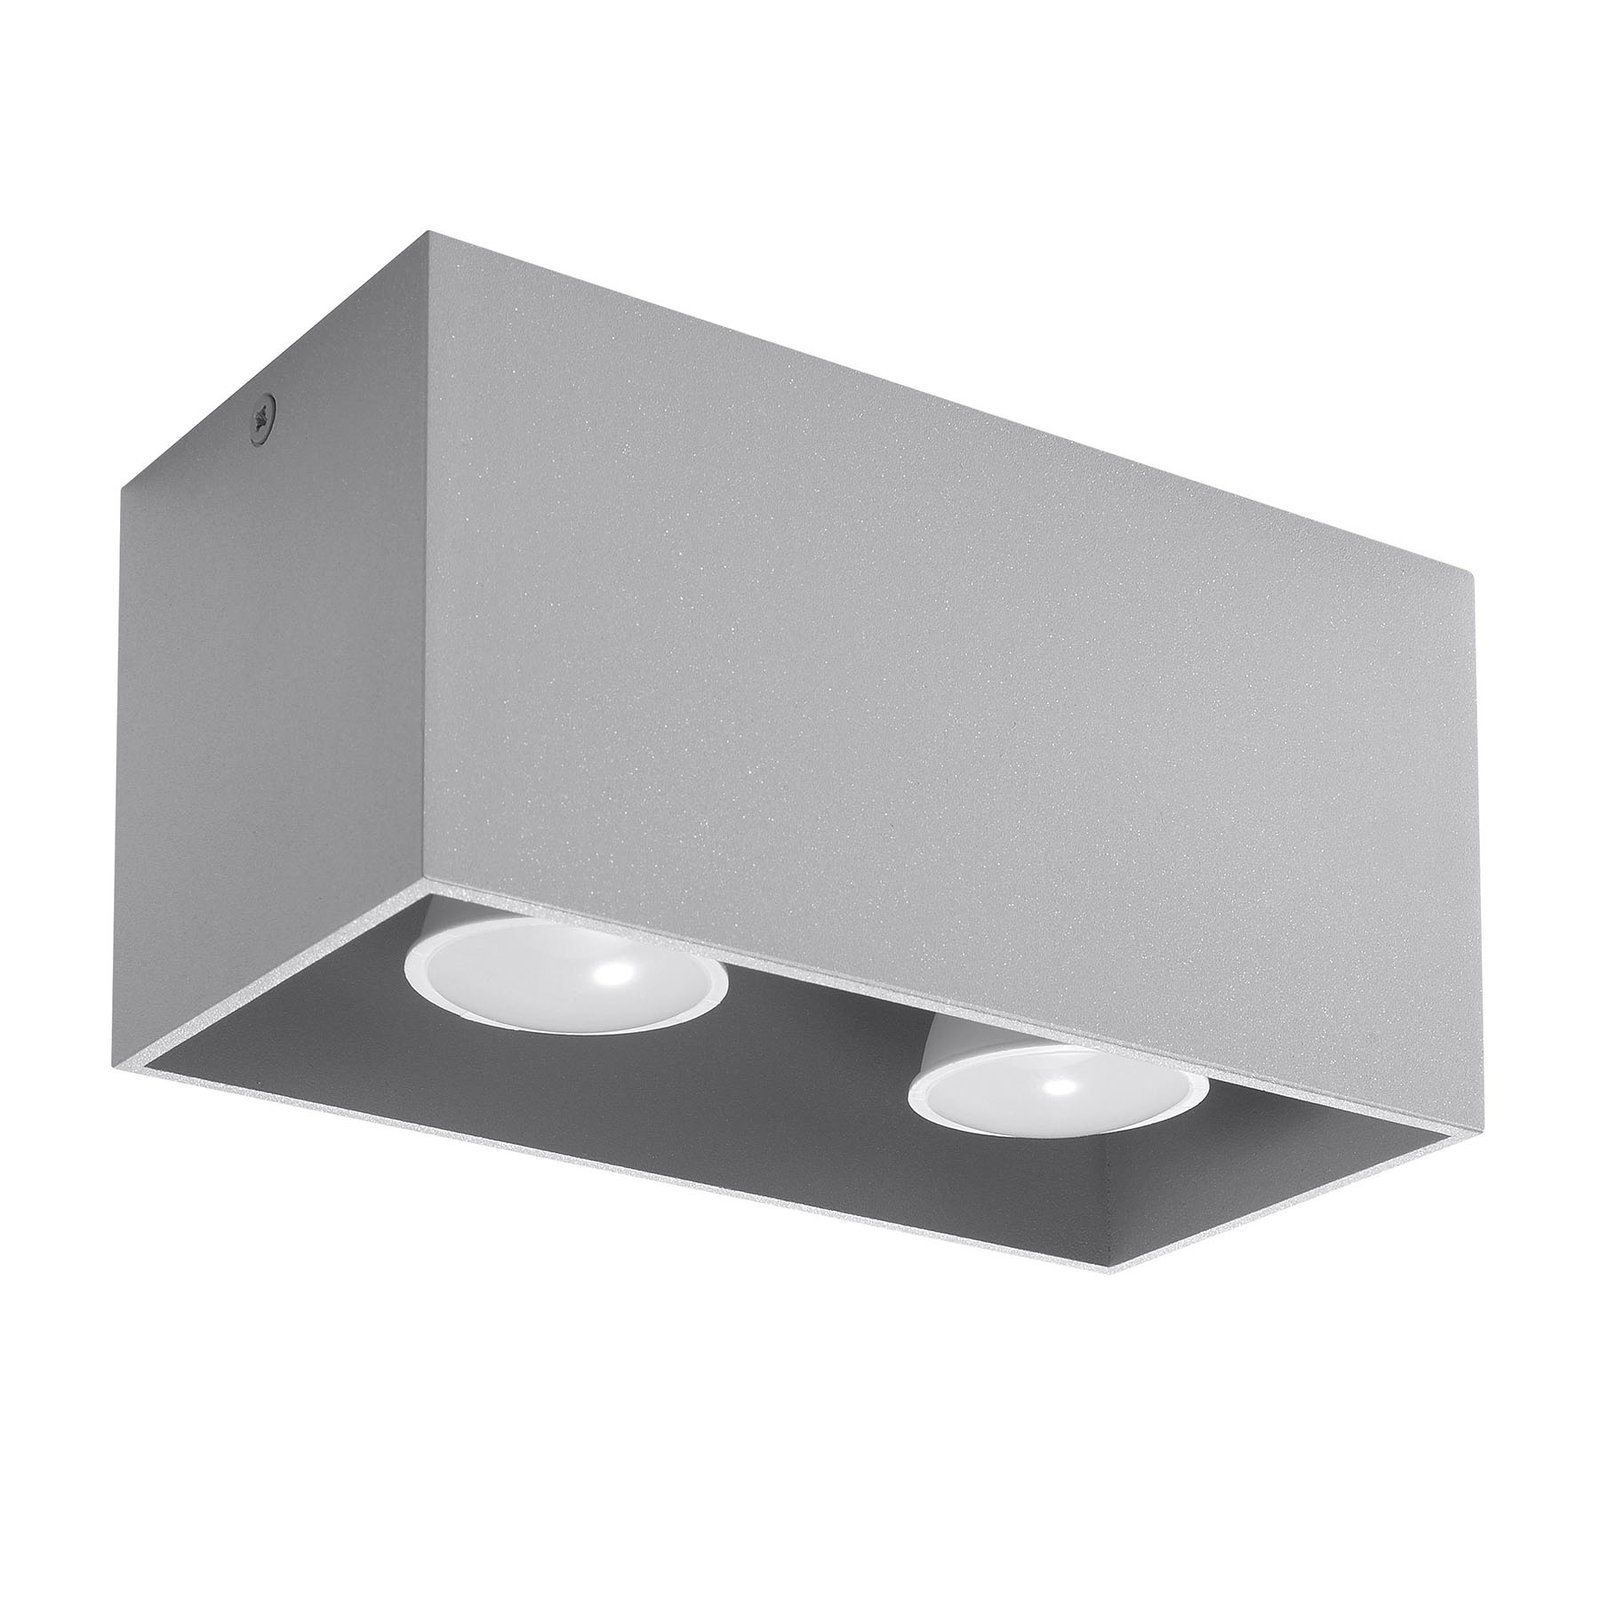 Ara Maxi aluminium ceiling light 2-bulb grey